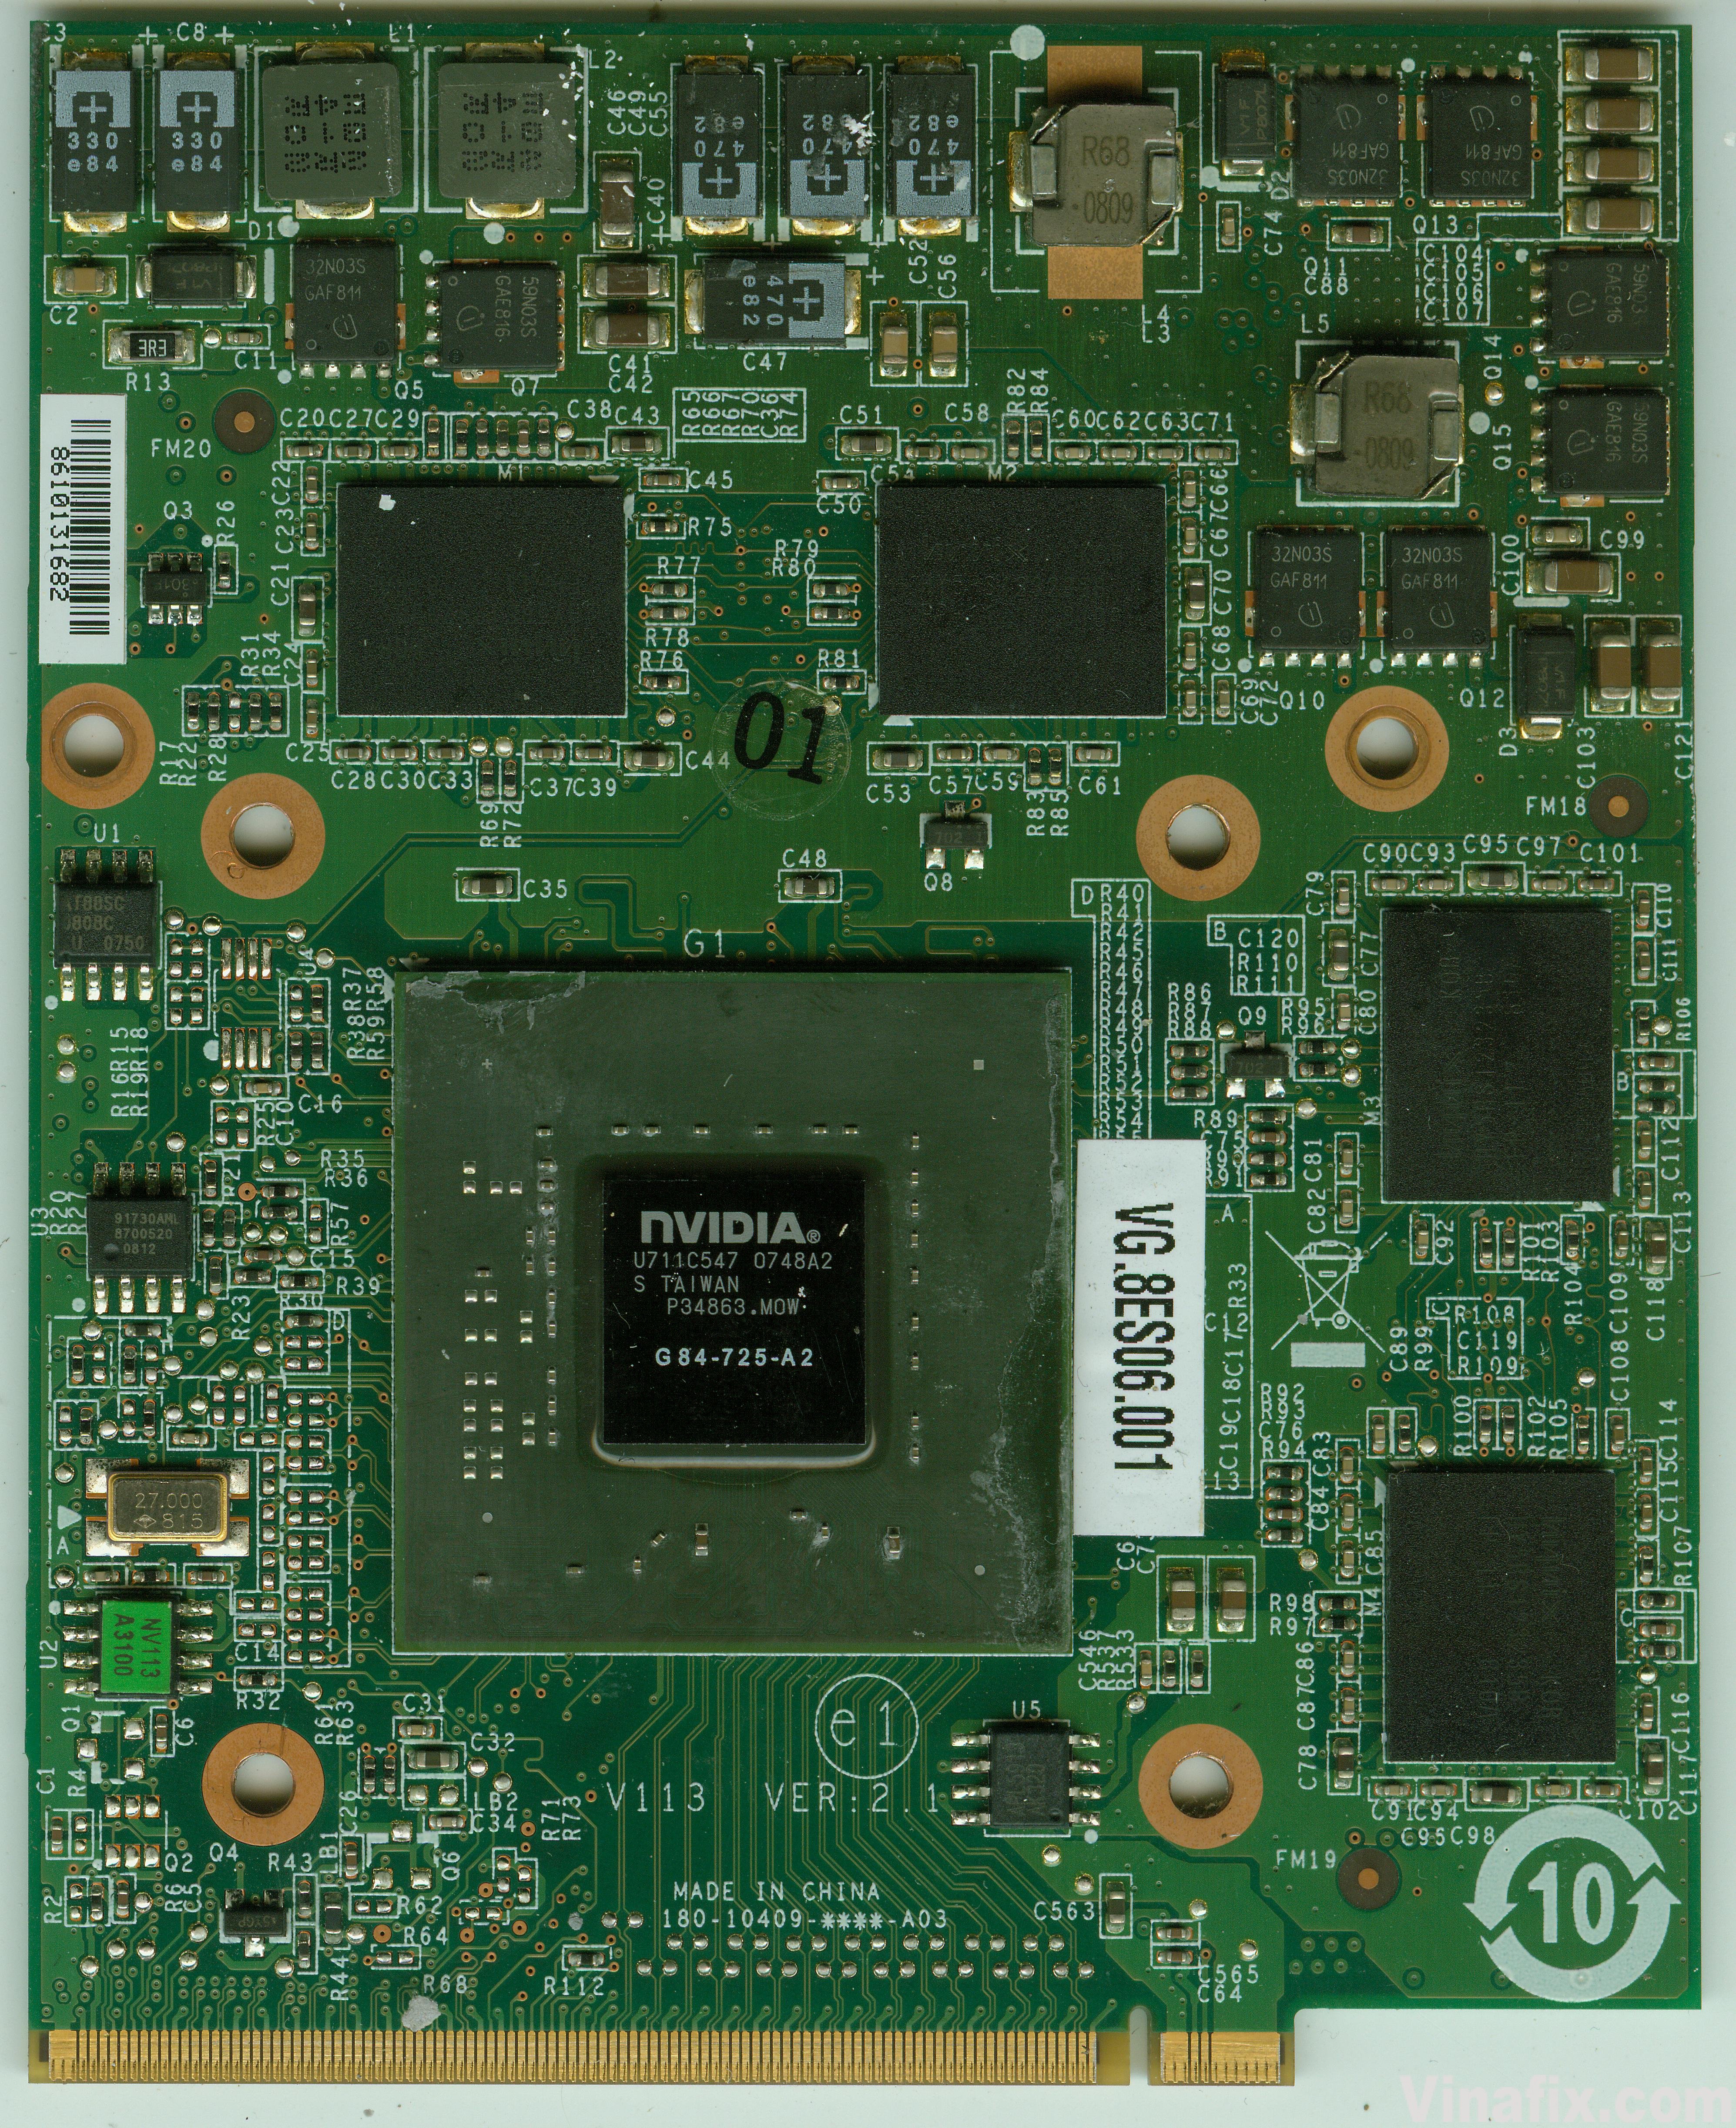 Nvidia V113 VER 2.1 - VG.8ES06.001(G84-725-A2) - Acer Aspire 8920G A